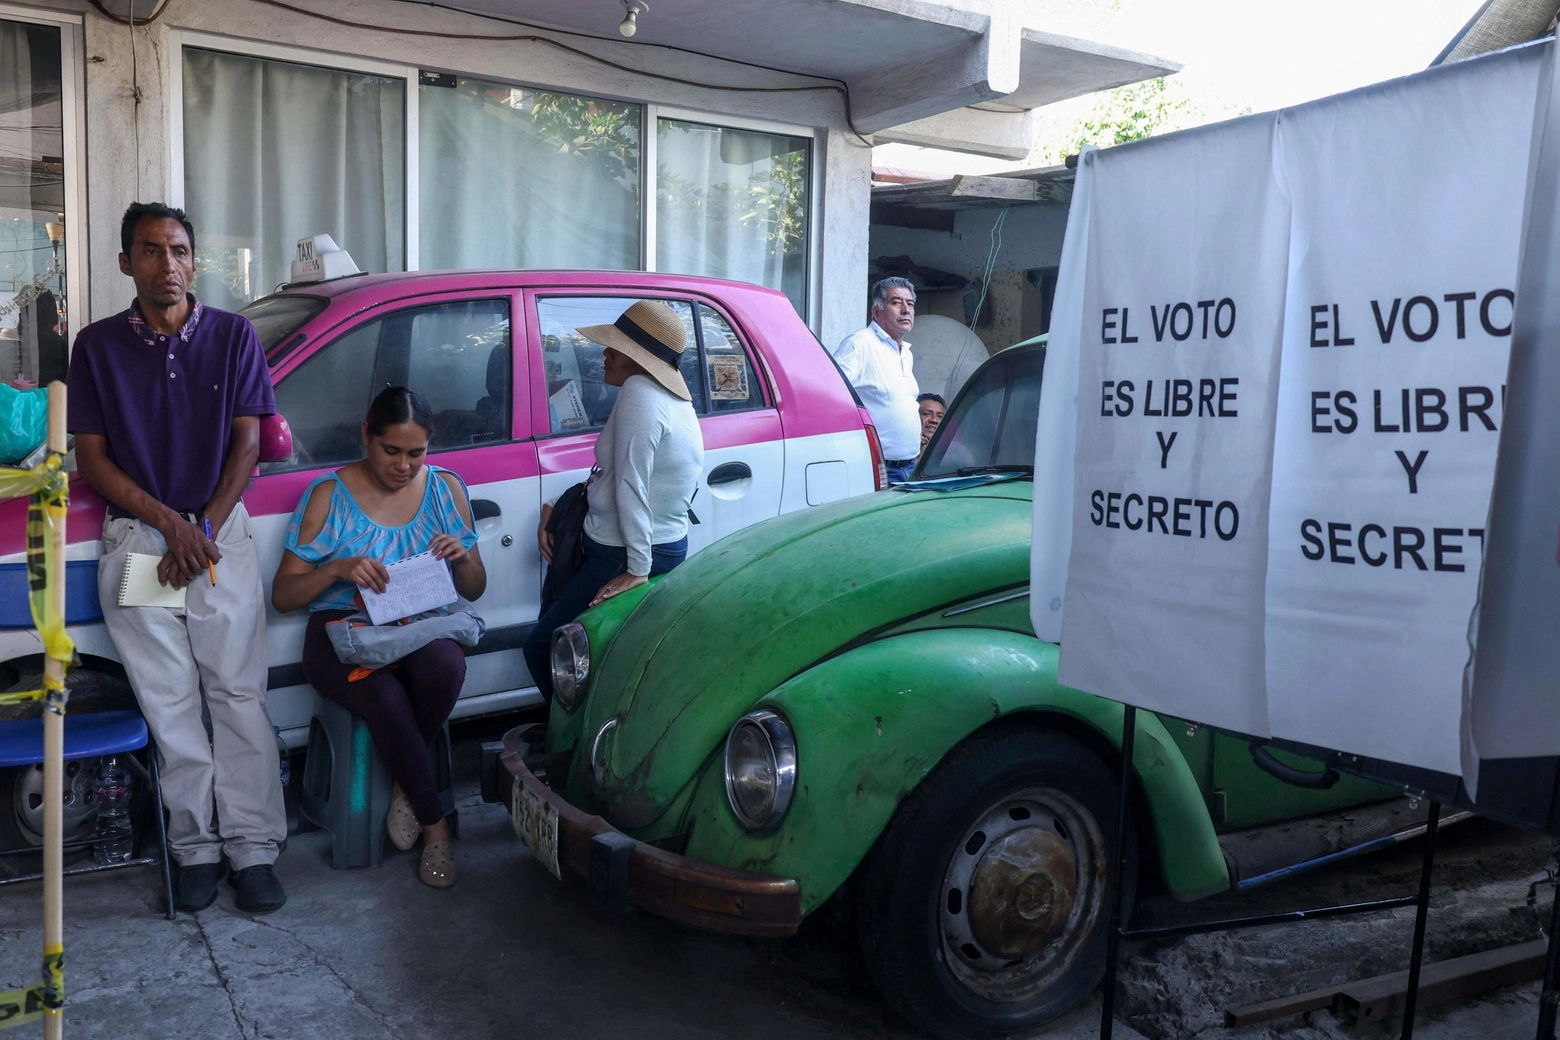 Le elezioni in Messico